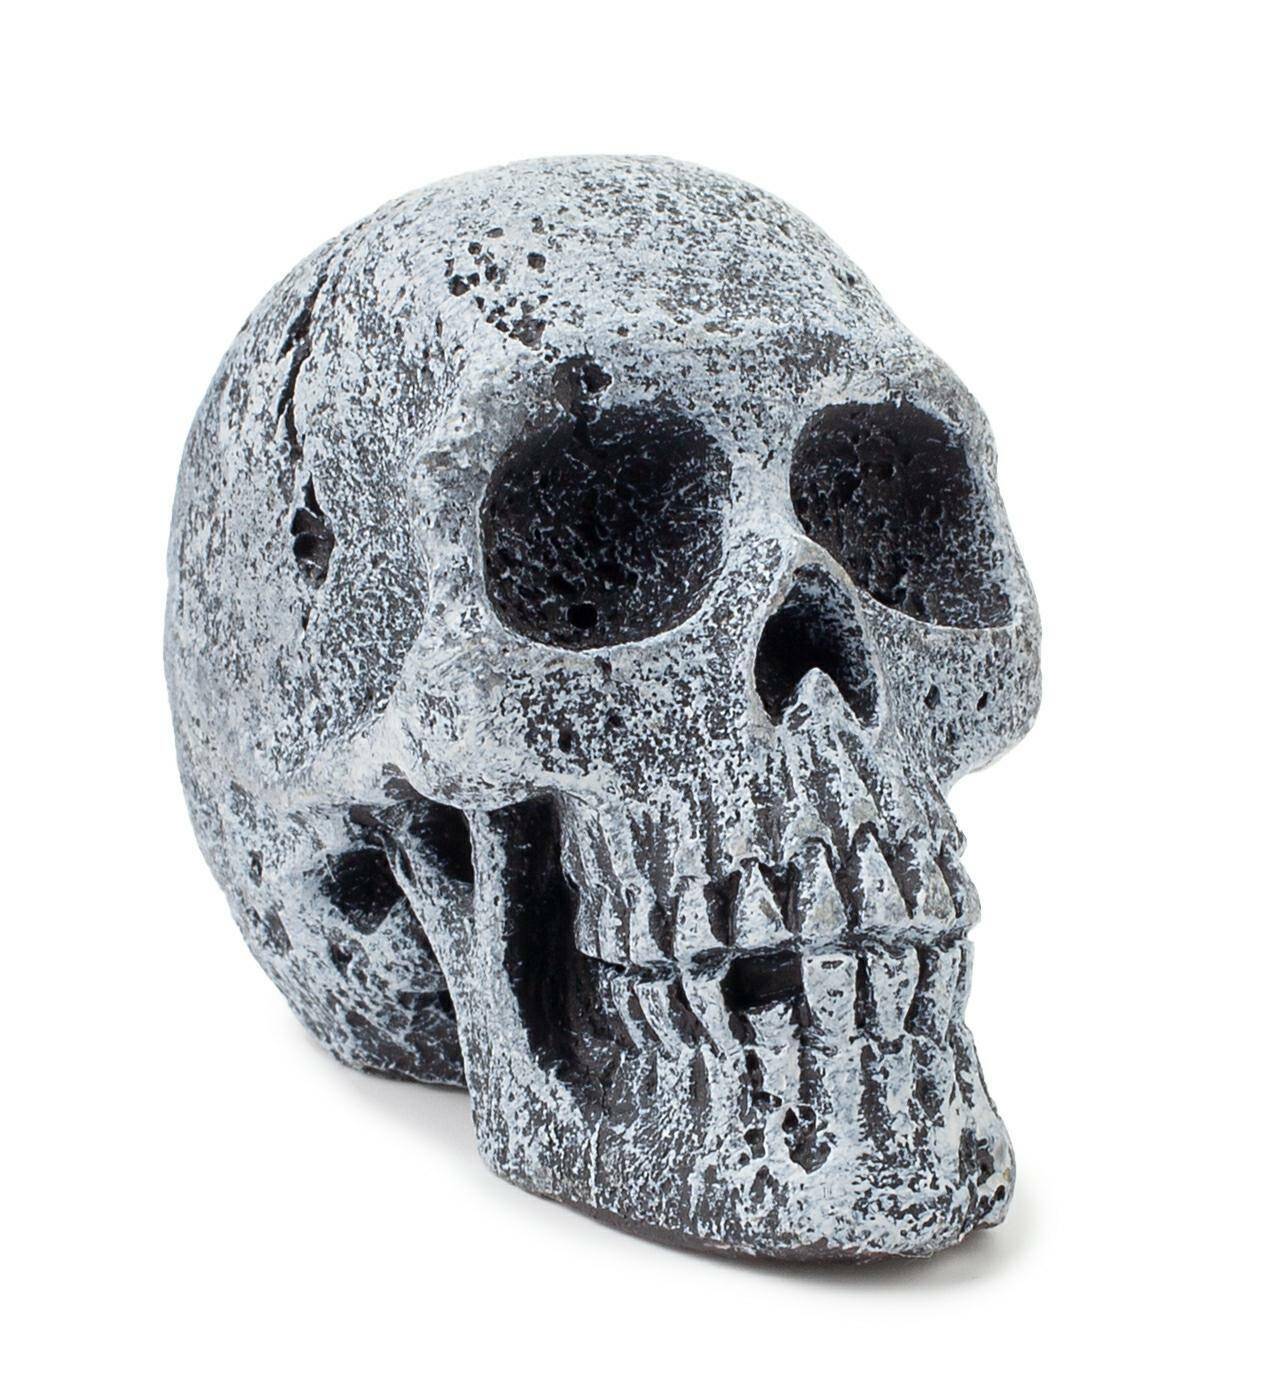 Aquarium skull decoration Happet R108 5,5 cm